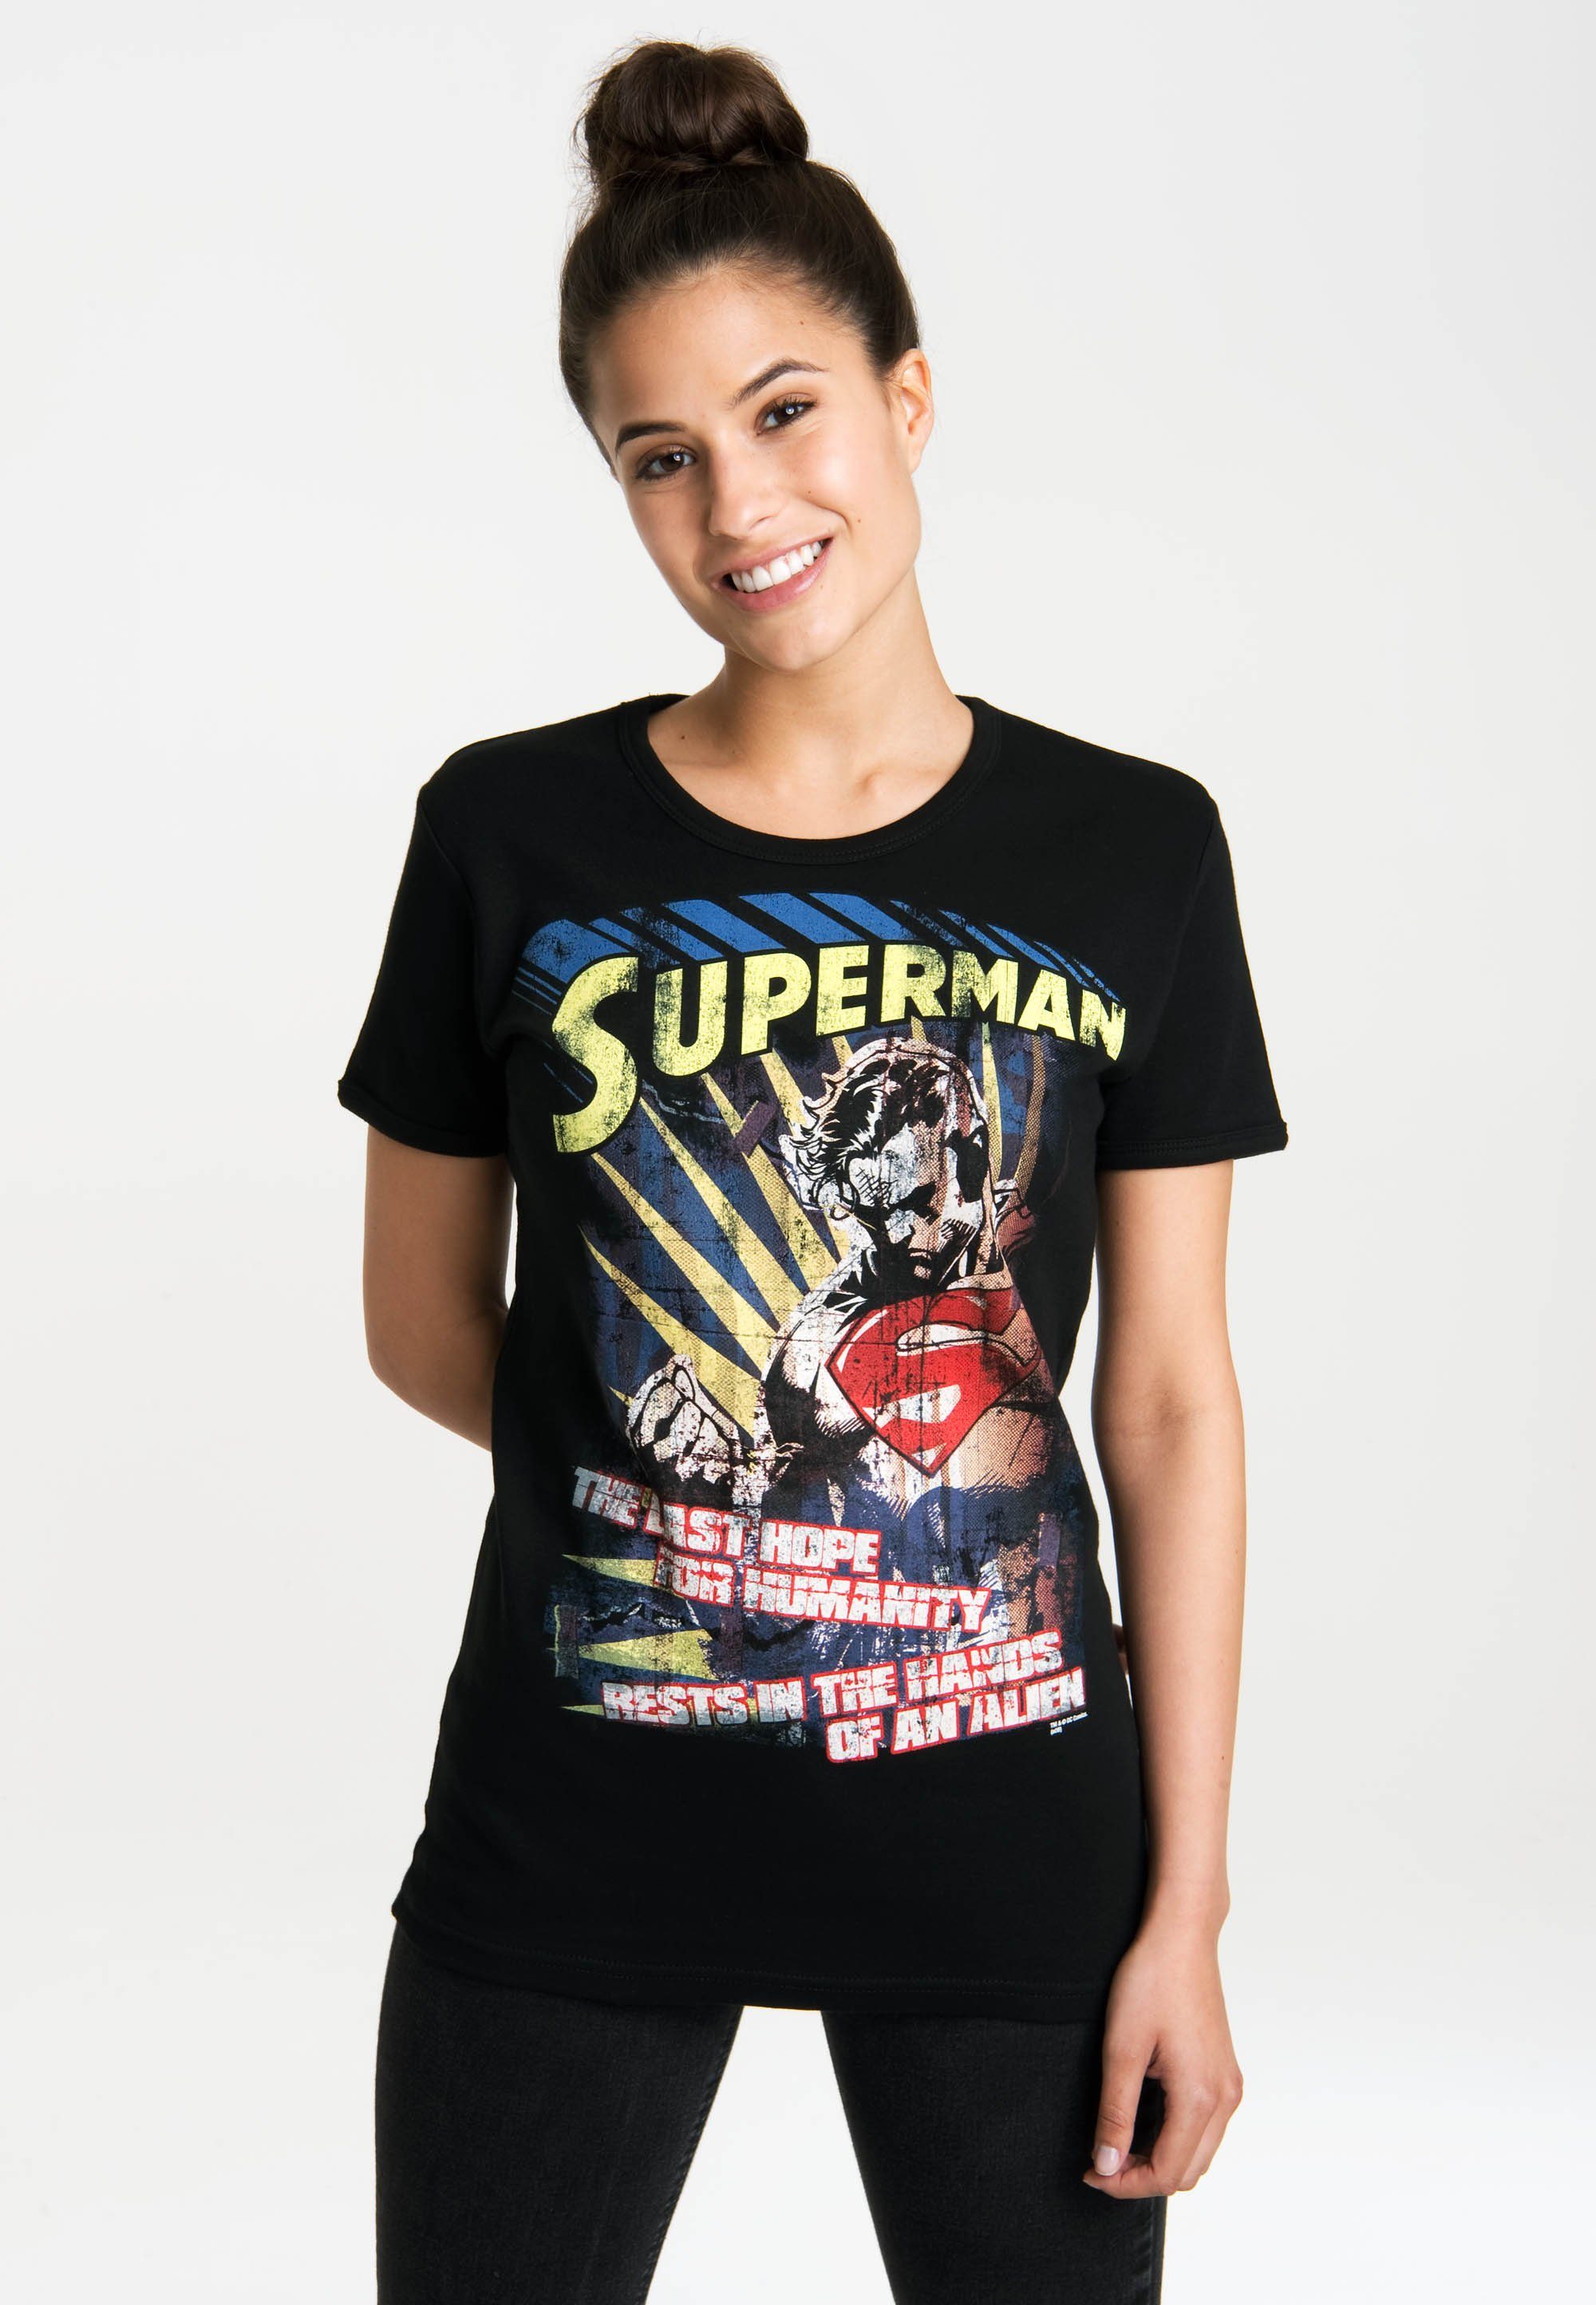 LOGOSHIRT T-Shirt Superman – The Last Hope mit lizenziertem Originaldesign,  Mit klassischem Rundhals-Ausschnitt für Tragekomfort